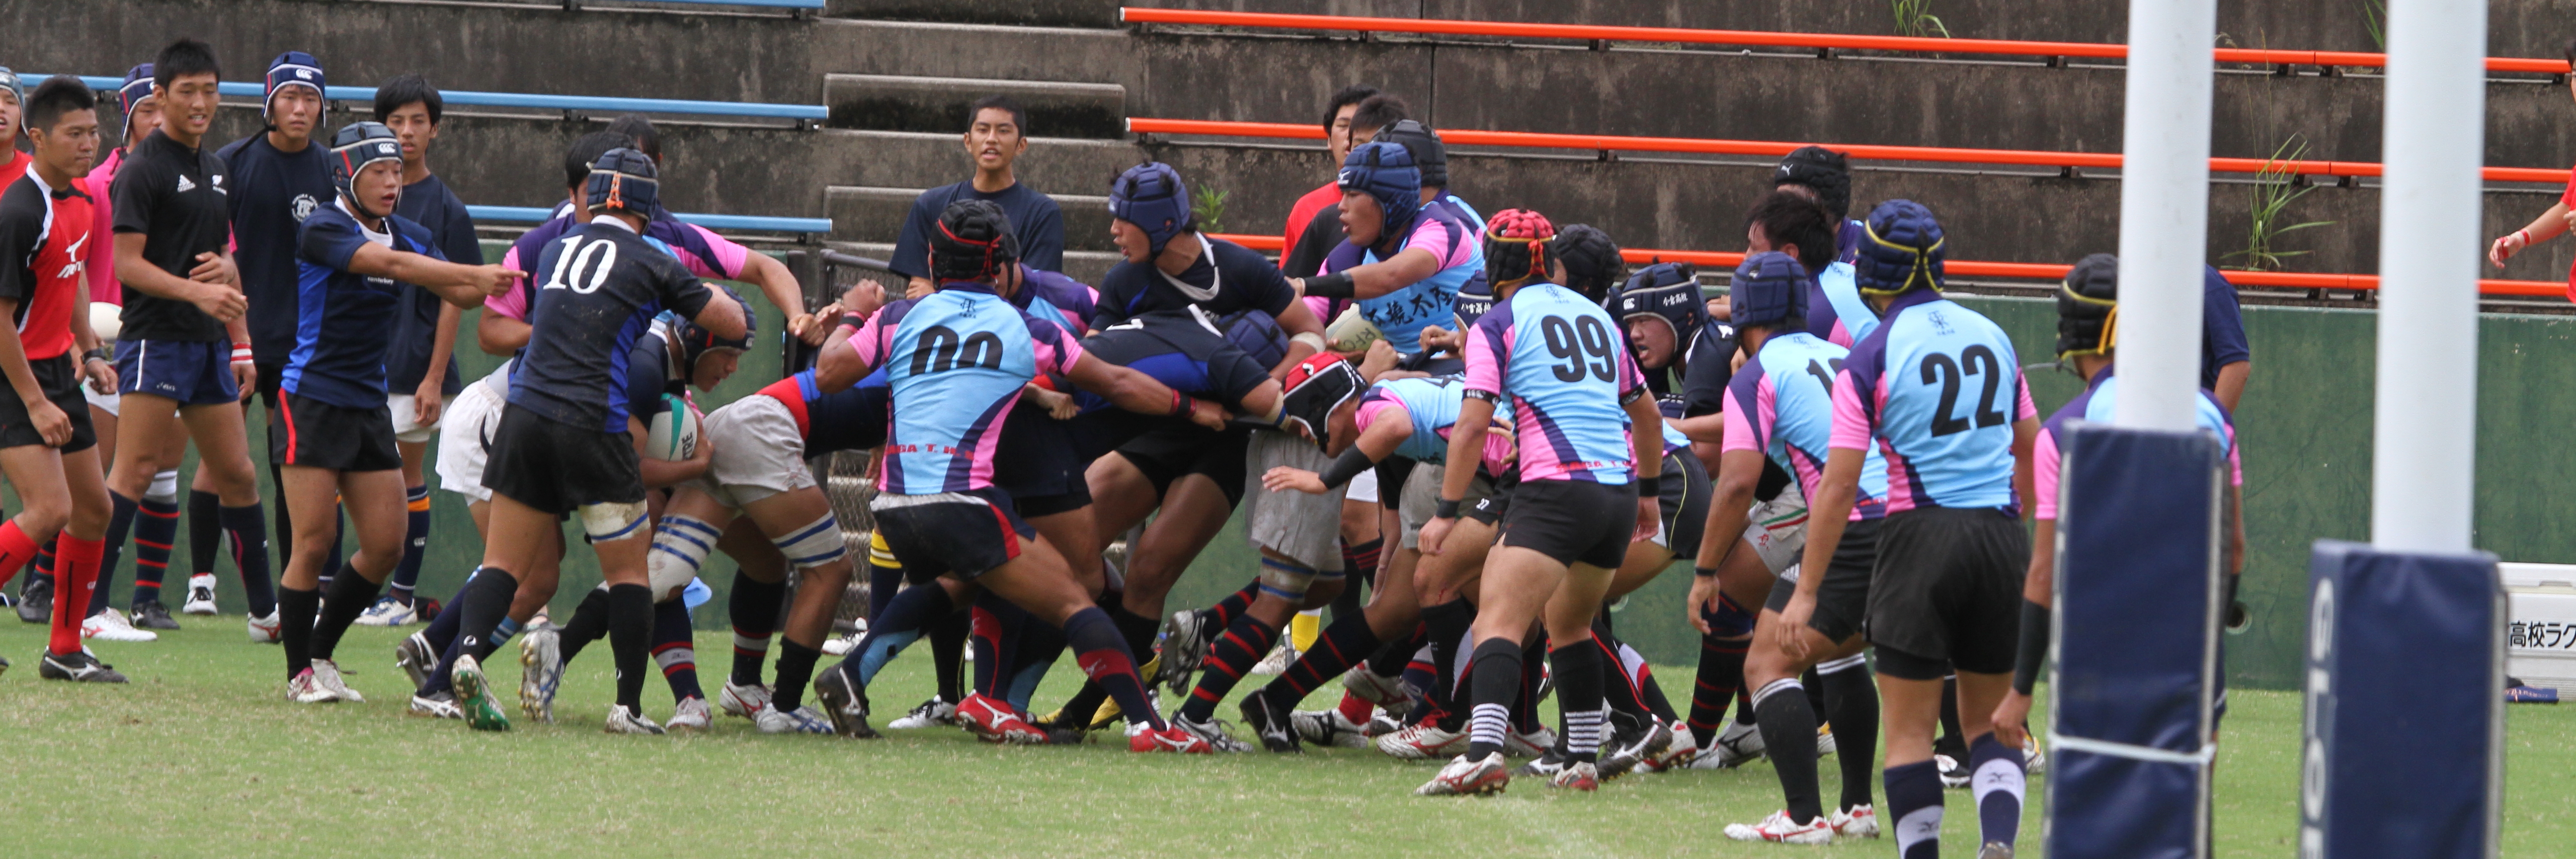 http://kokura-rugby.sakura.ne.jp/2011.9.19-4A.JPG